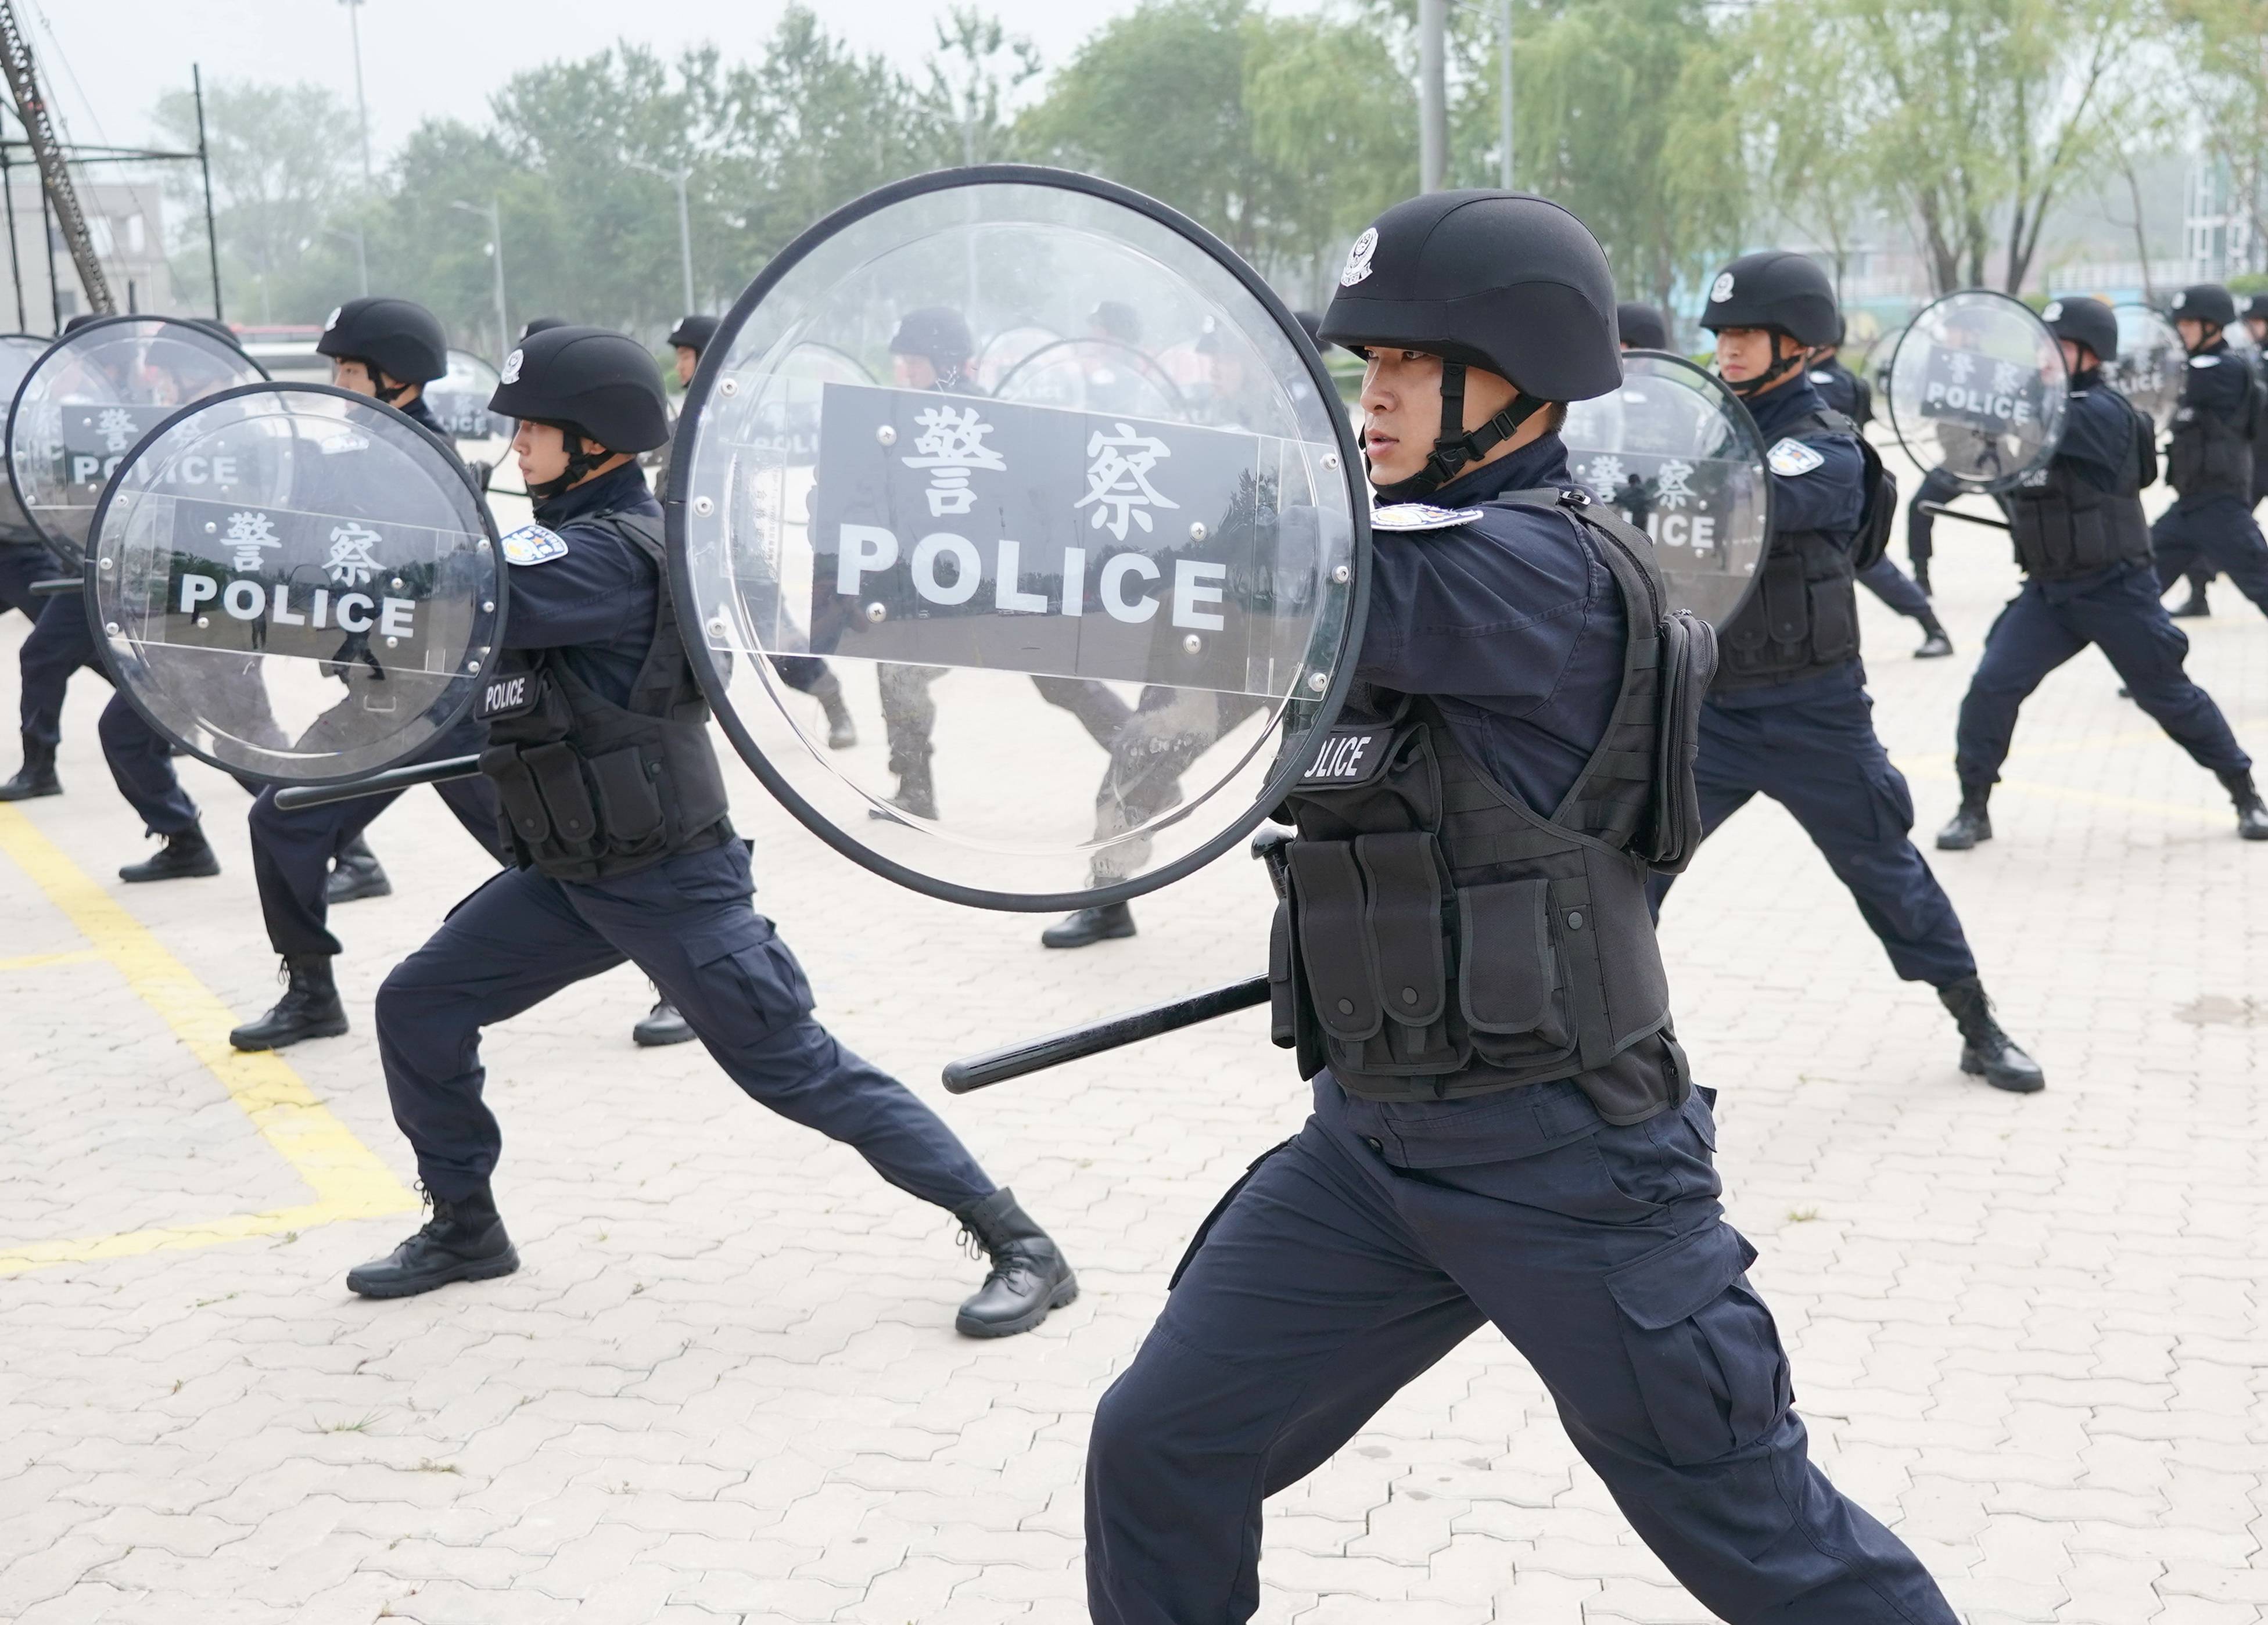 7月31日,河北出入境边防检查总站的民警在进行盾牌操演练.